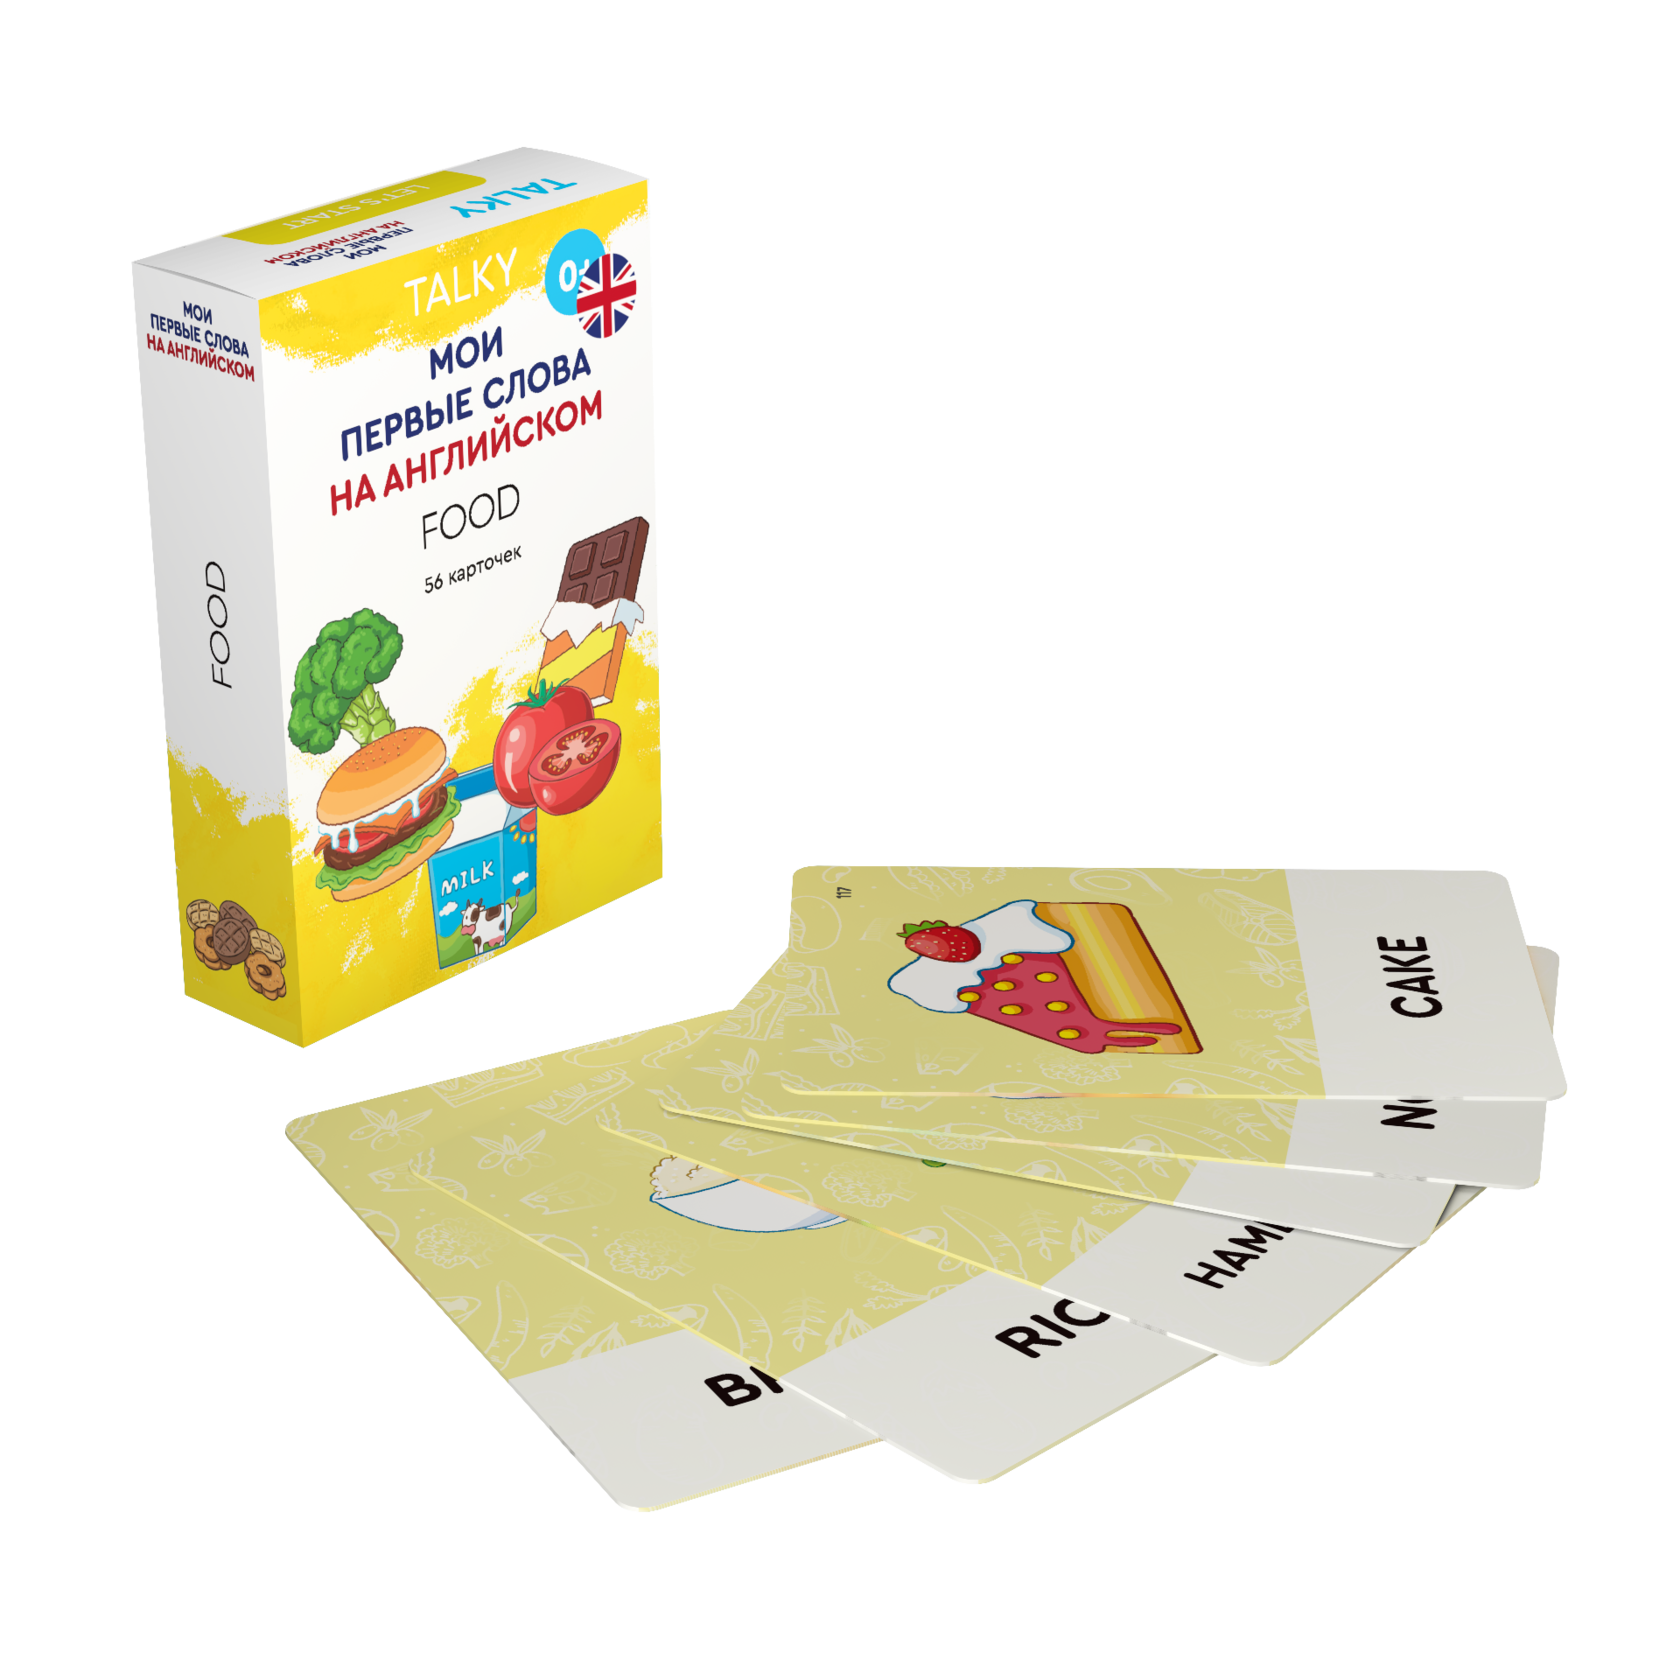 Развивающие карточки для детей LUMICUBE для TALKY, на англ. языке, еда, 56шт. KDTKE02-FOOD lumicube умные карточки talky на английском языке animals